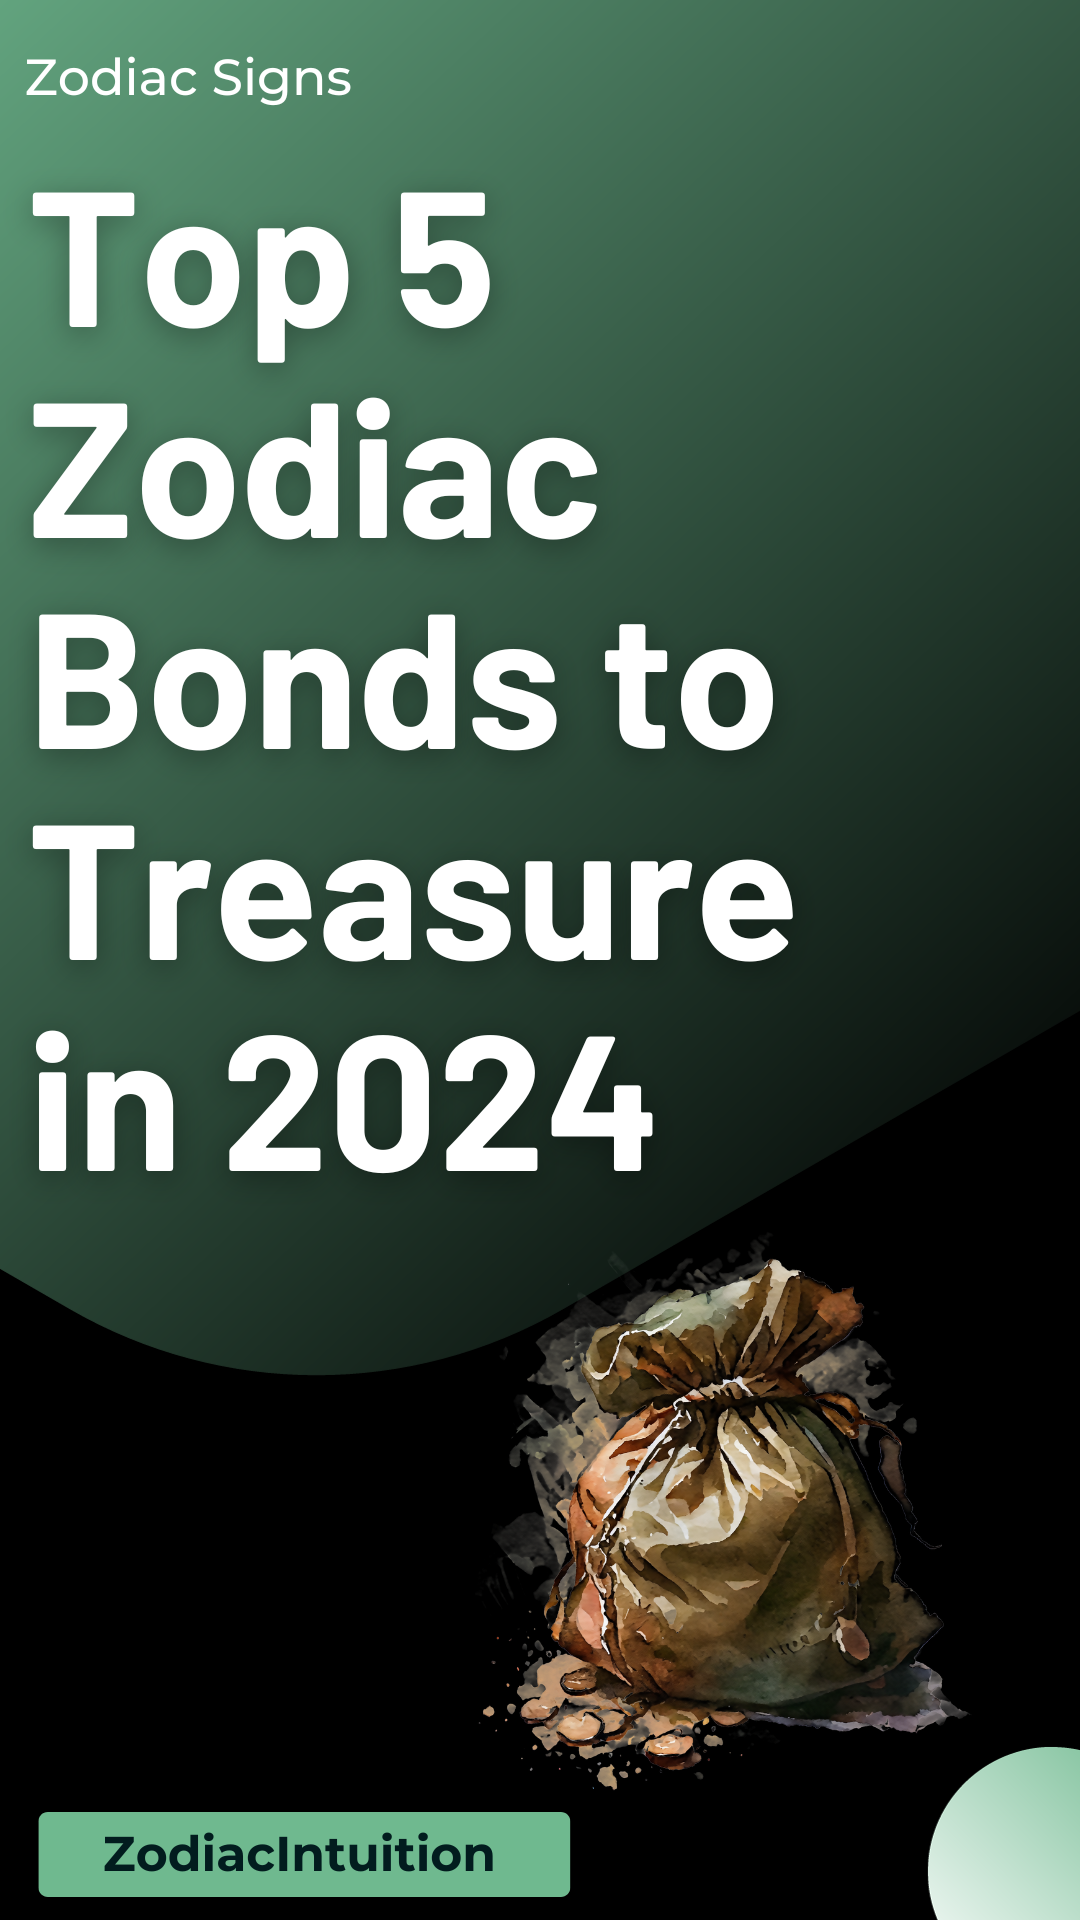 Top 5 Zodiac Bonds to Treasure in 2024